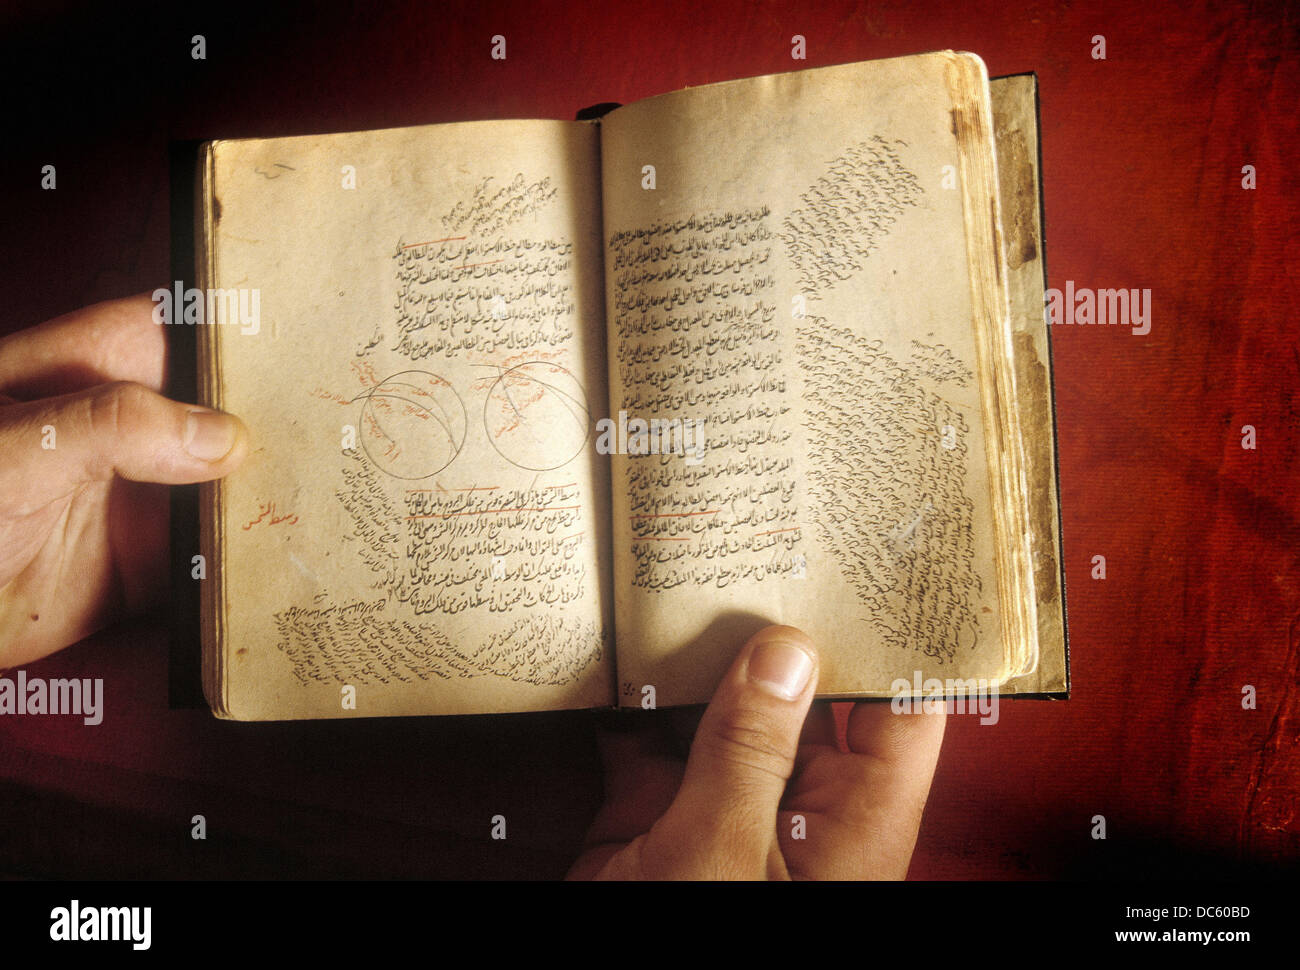 Libro astrológico fechada el siglo XV de la Biblioteca de Alejandría. Egipto Foto de stock